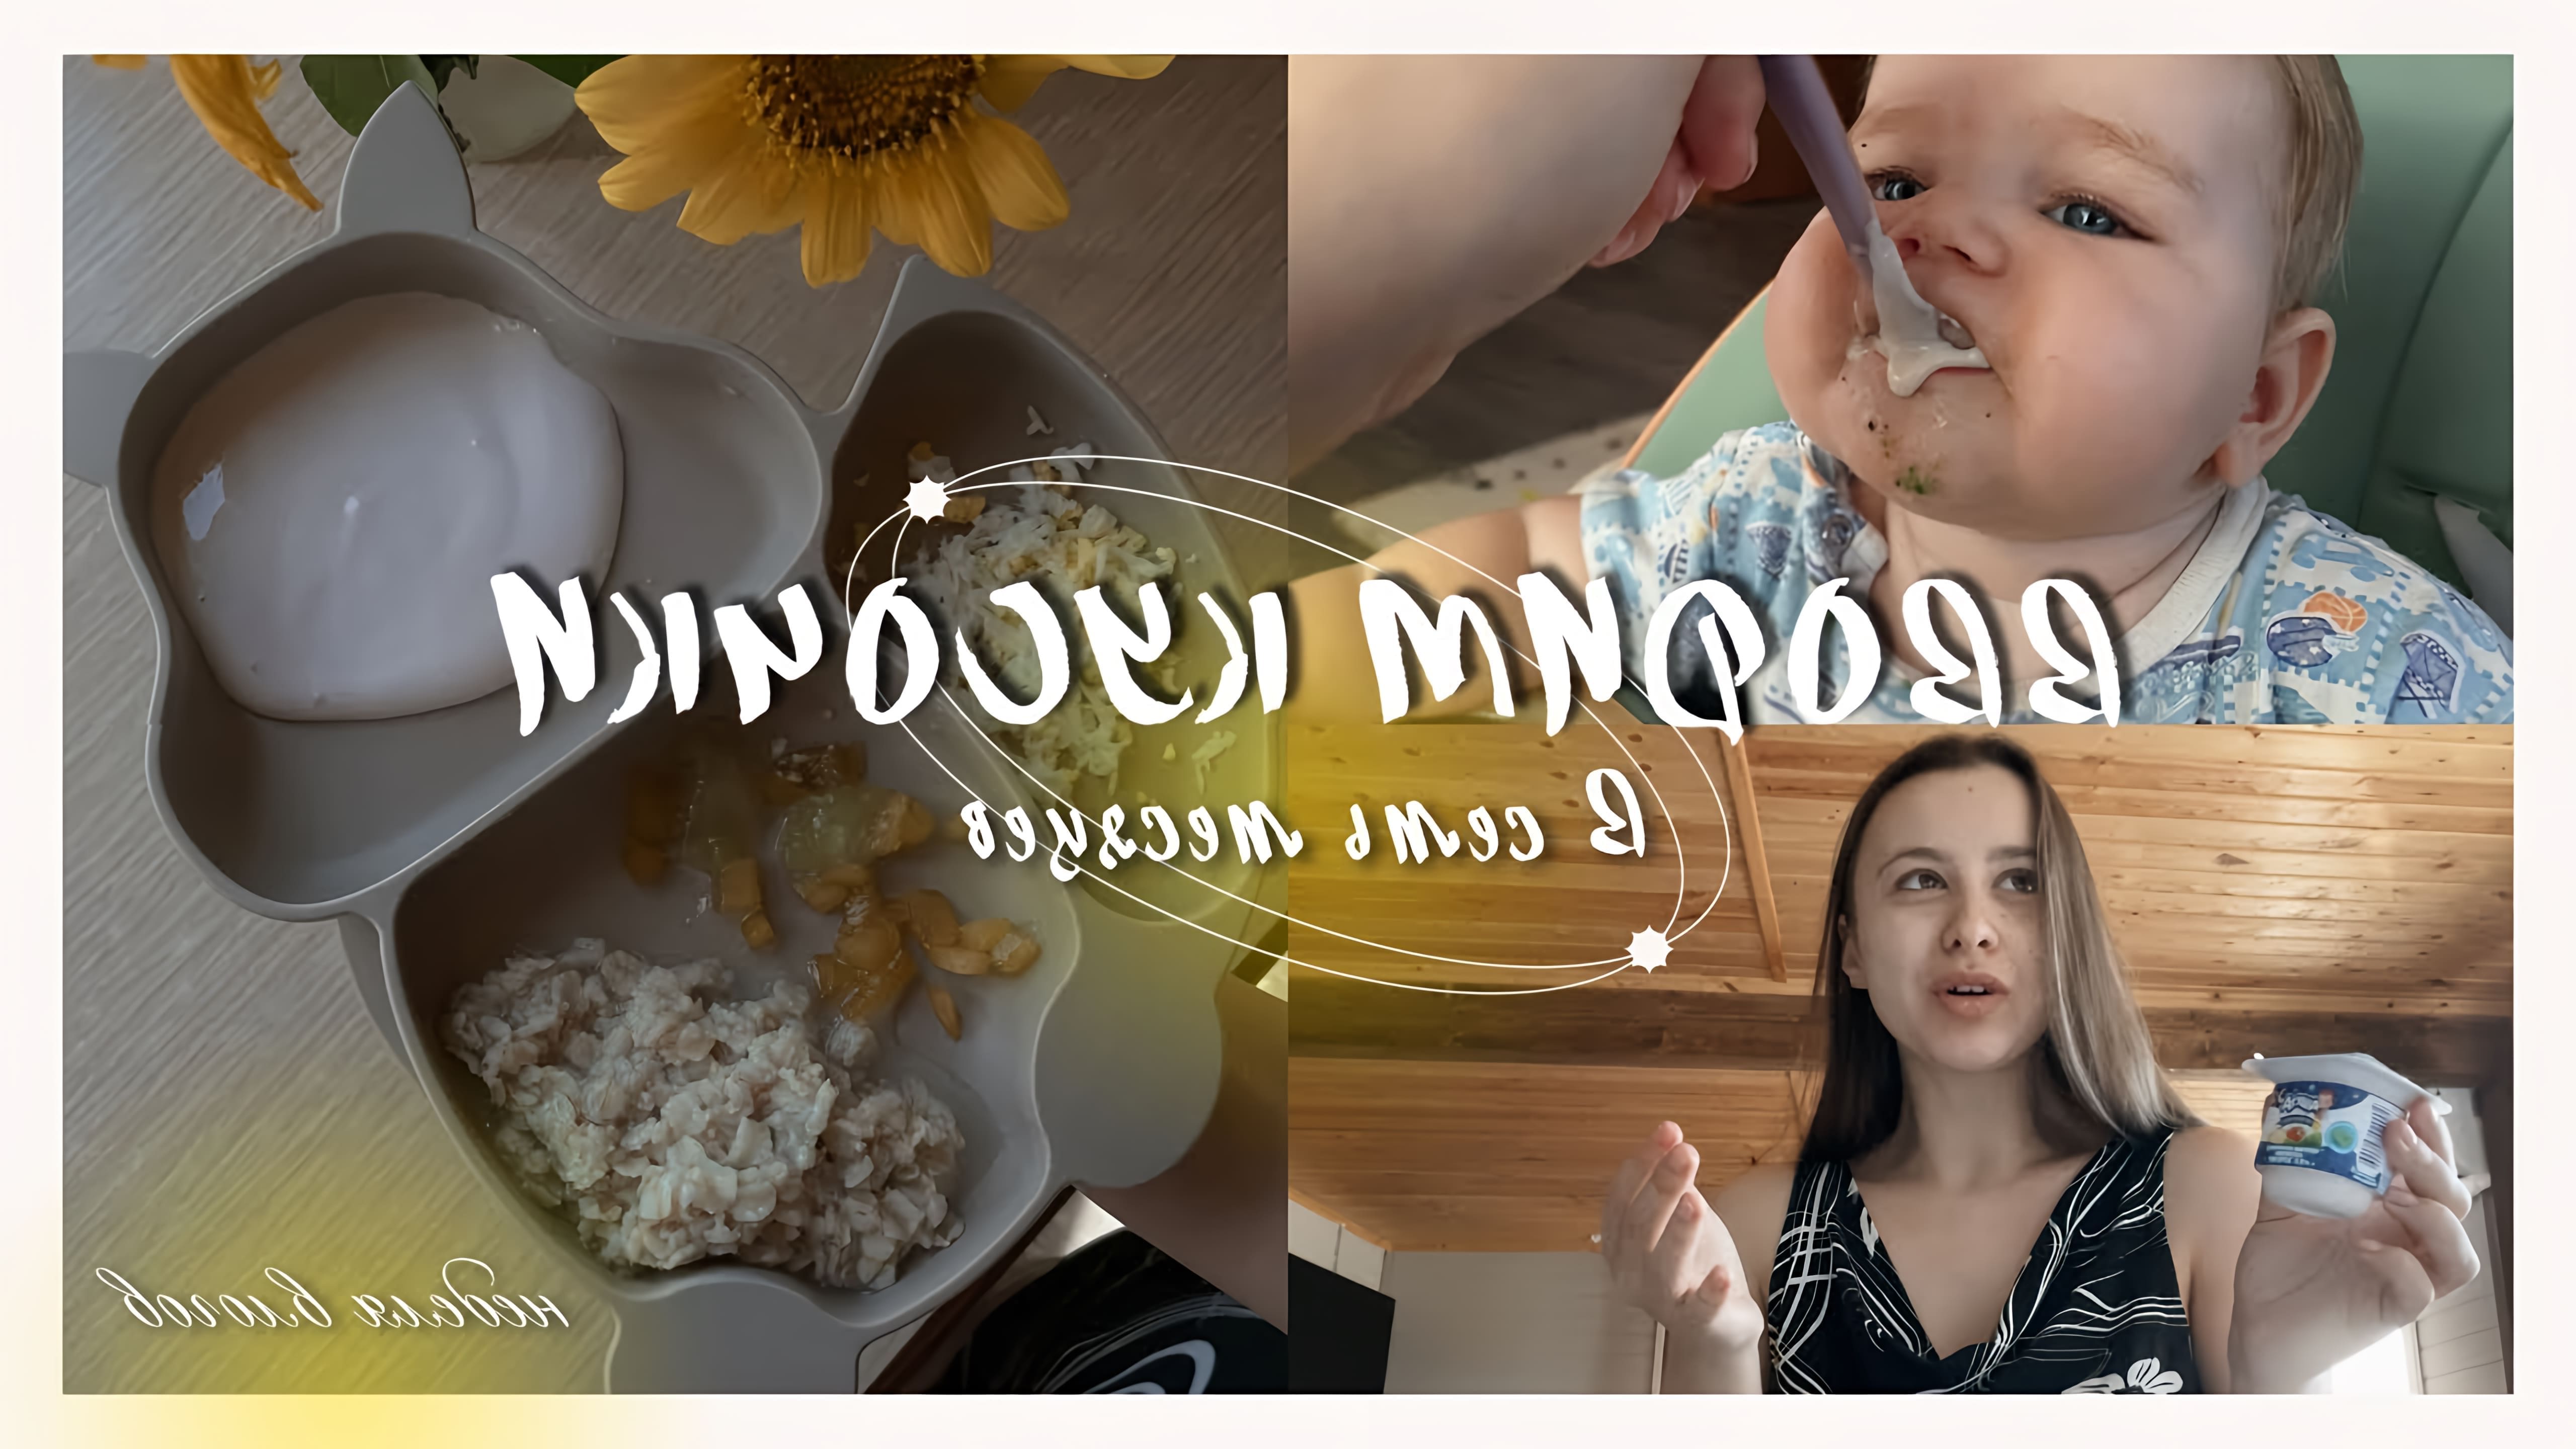 В этом видео мама показывает, как она вводит прикорм своей дочери, которая в возрасте 7-8 месяцев